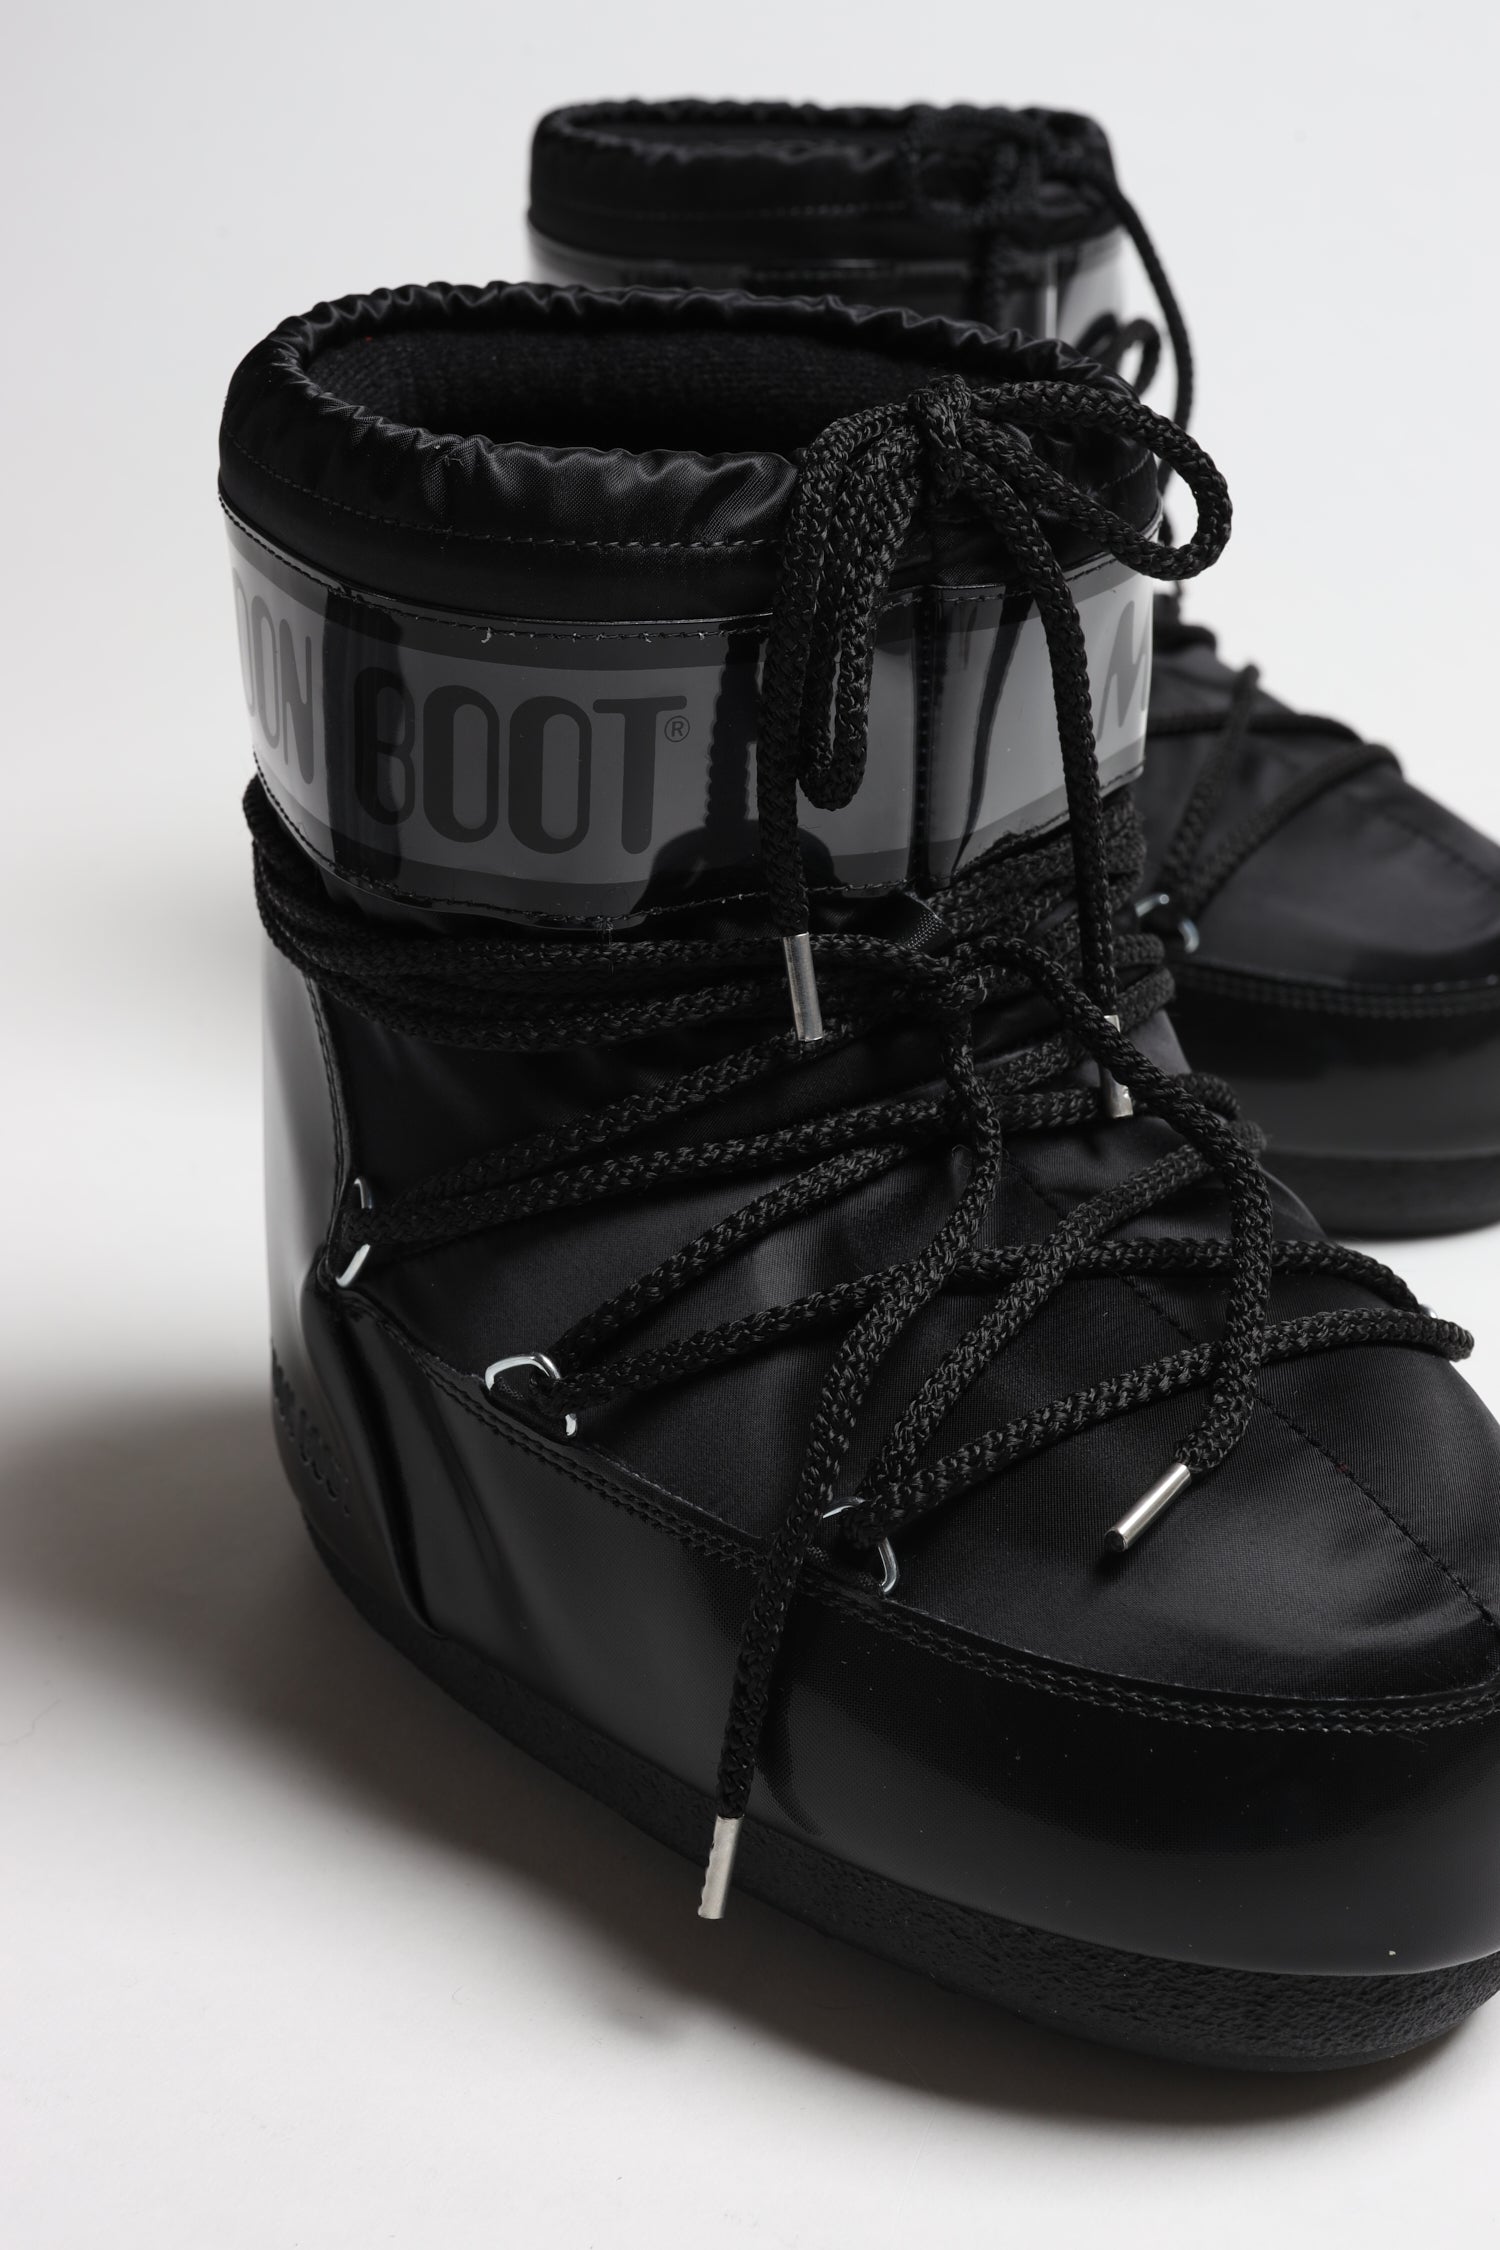  Moon Boot, Icon Low Nylon Unisex Boots, 36/38, Black : Luxury  Stores